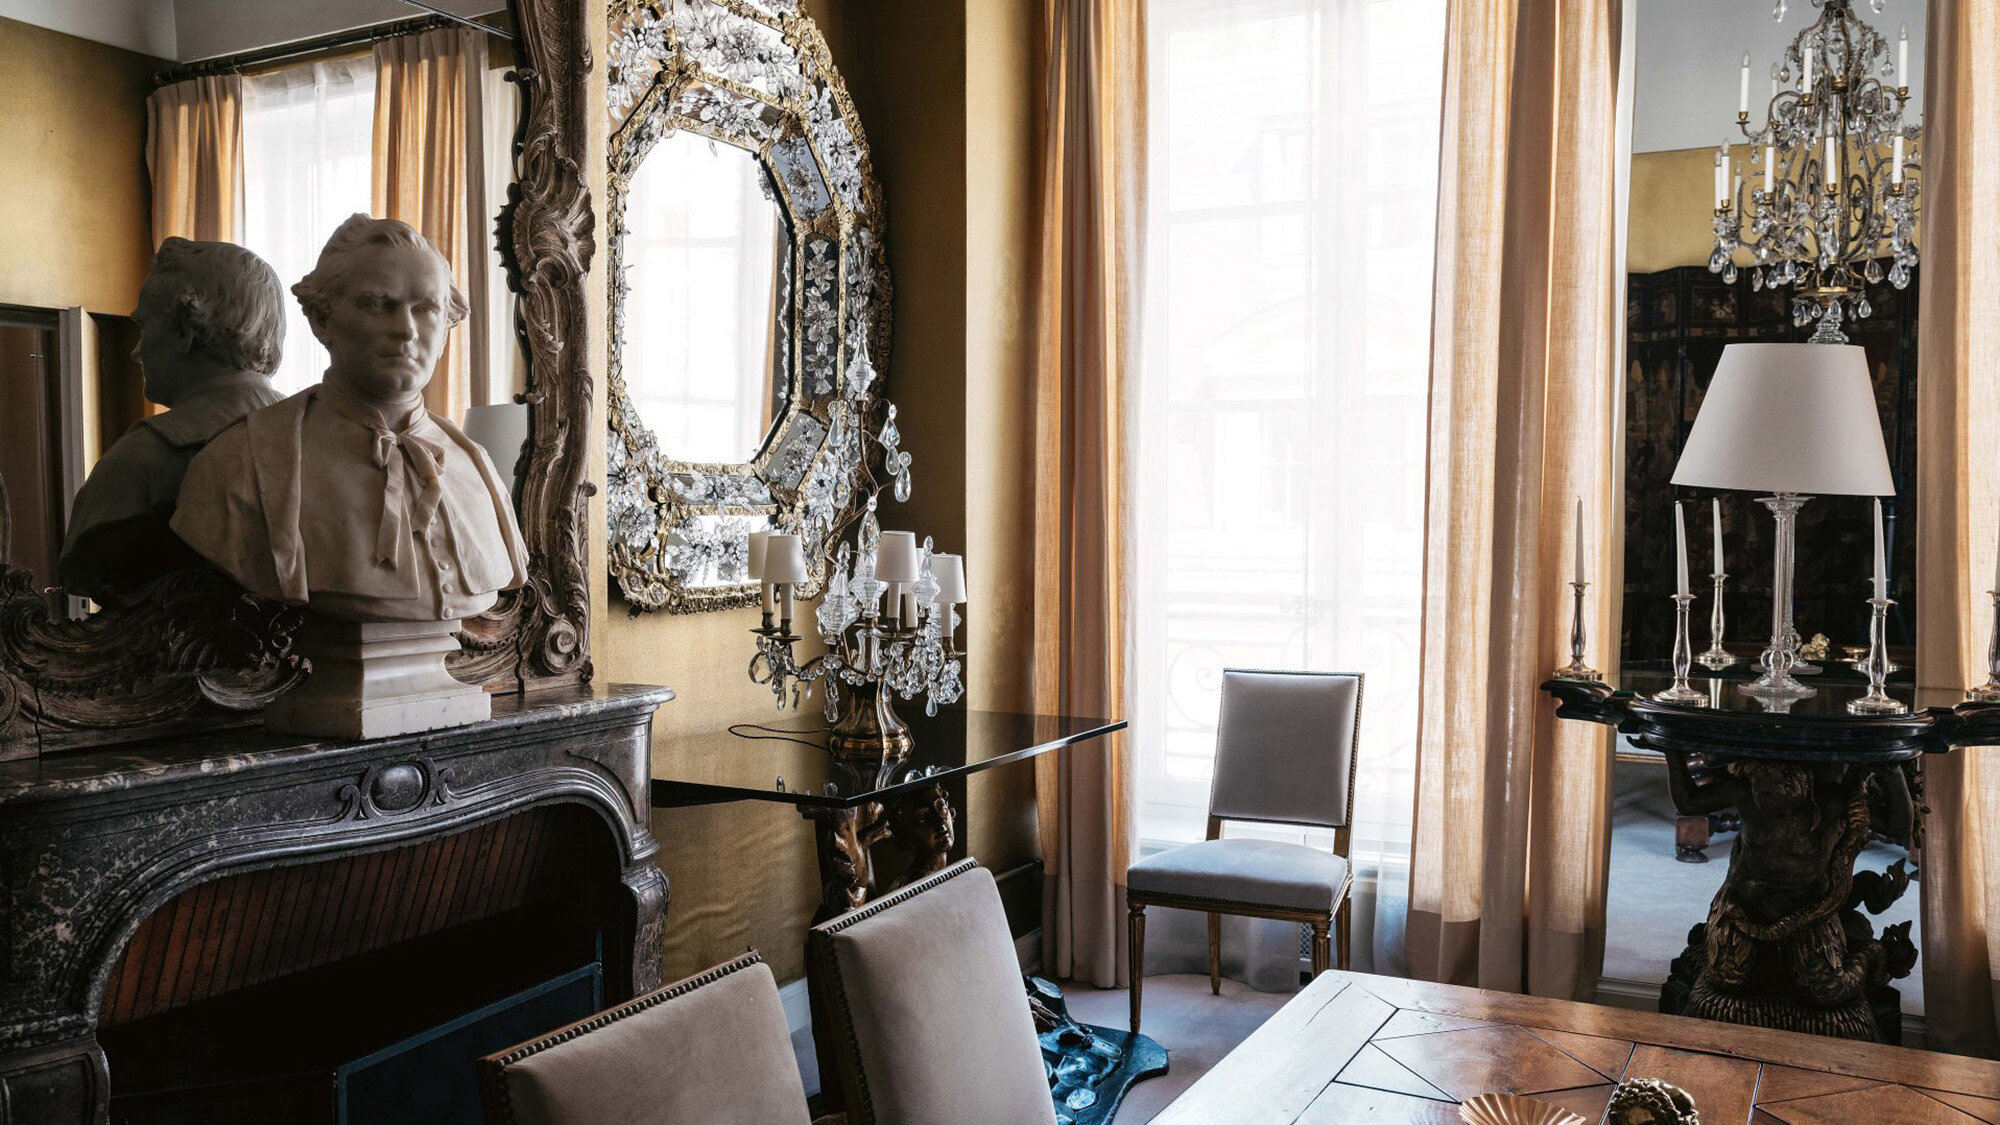 Квартира Коко Шанель в Париже, которая застыла во времени. Фото-тур